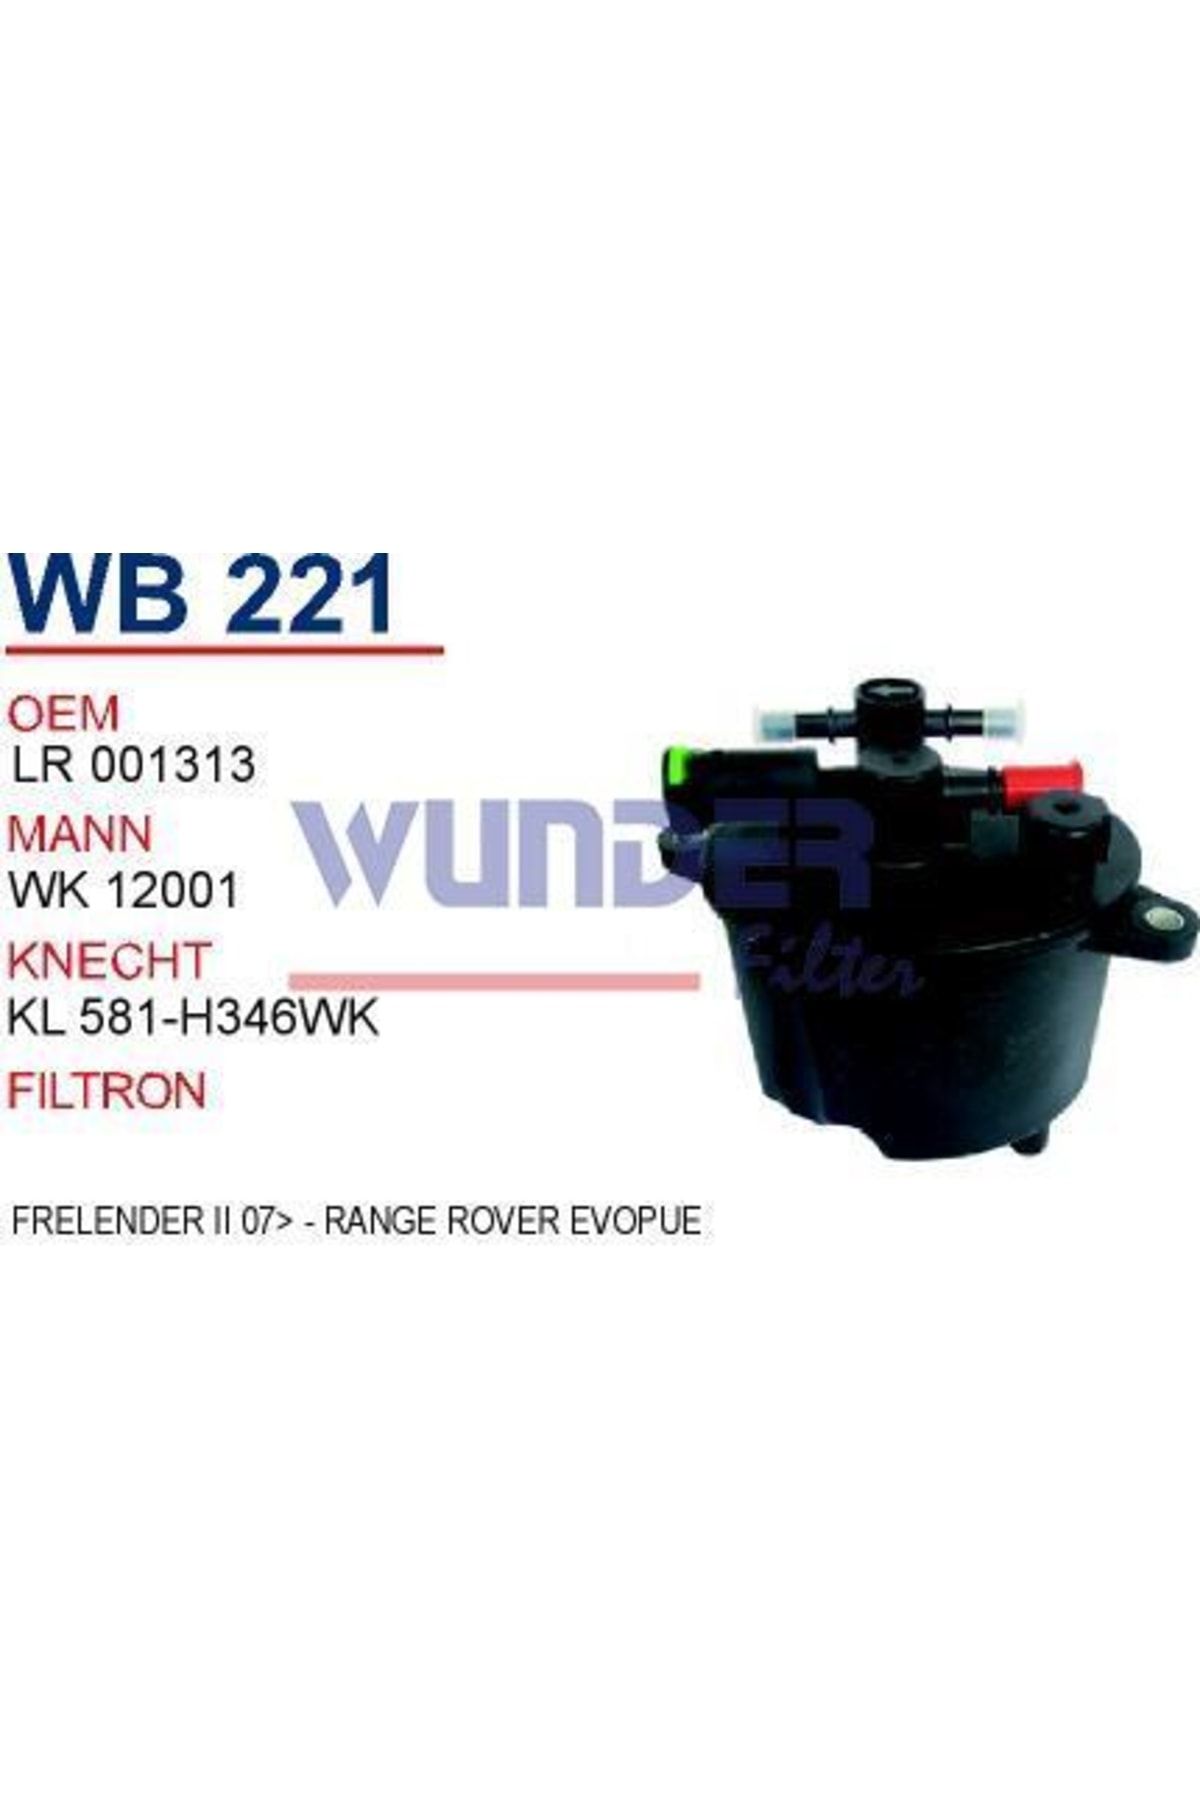 WUNDER Wb221 Mazot Filtresi - Frelender Iı 07- - Range Rover Evoque